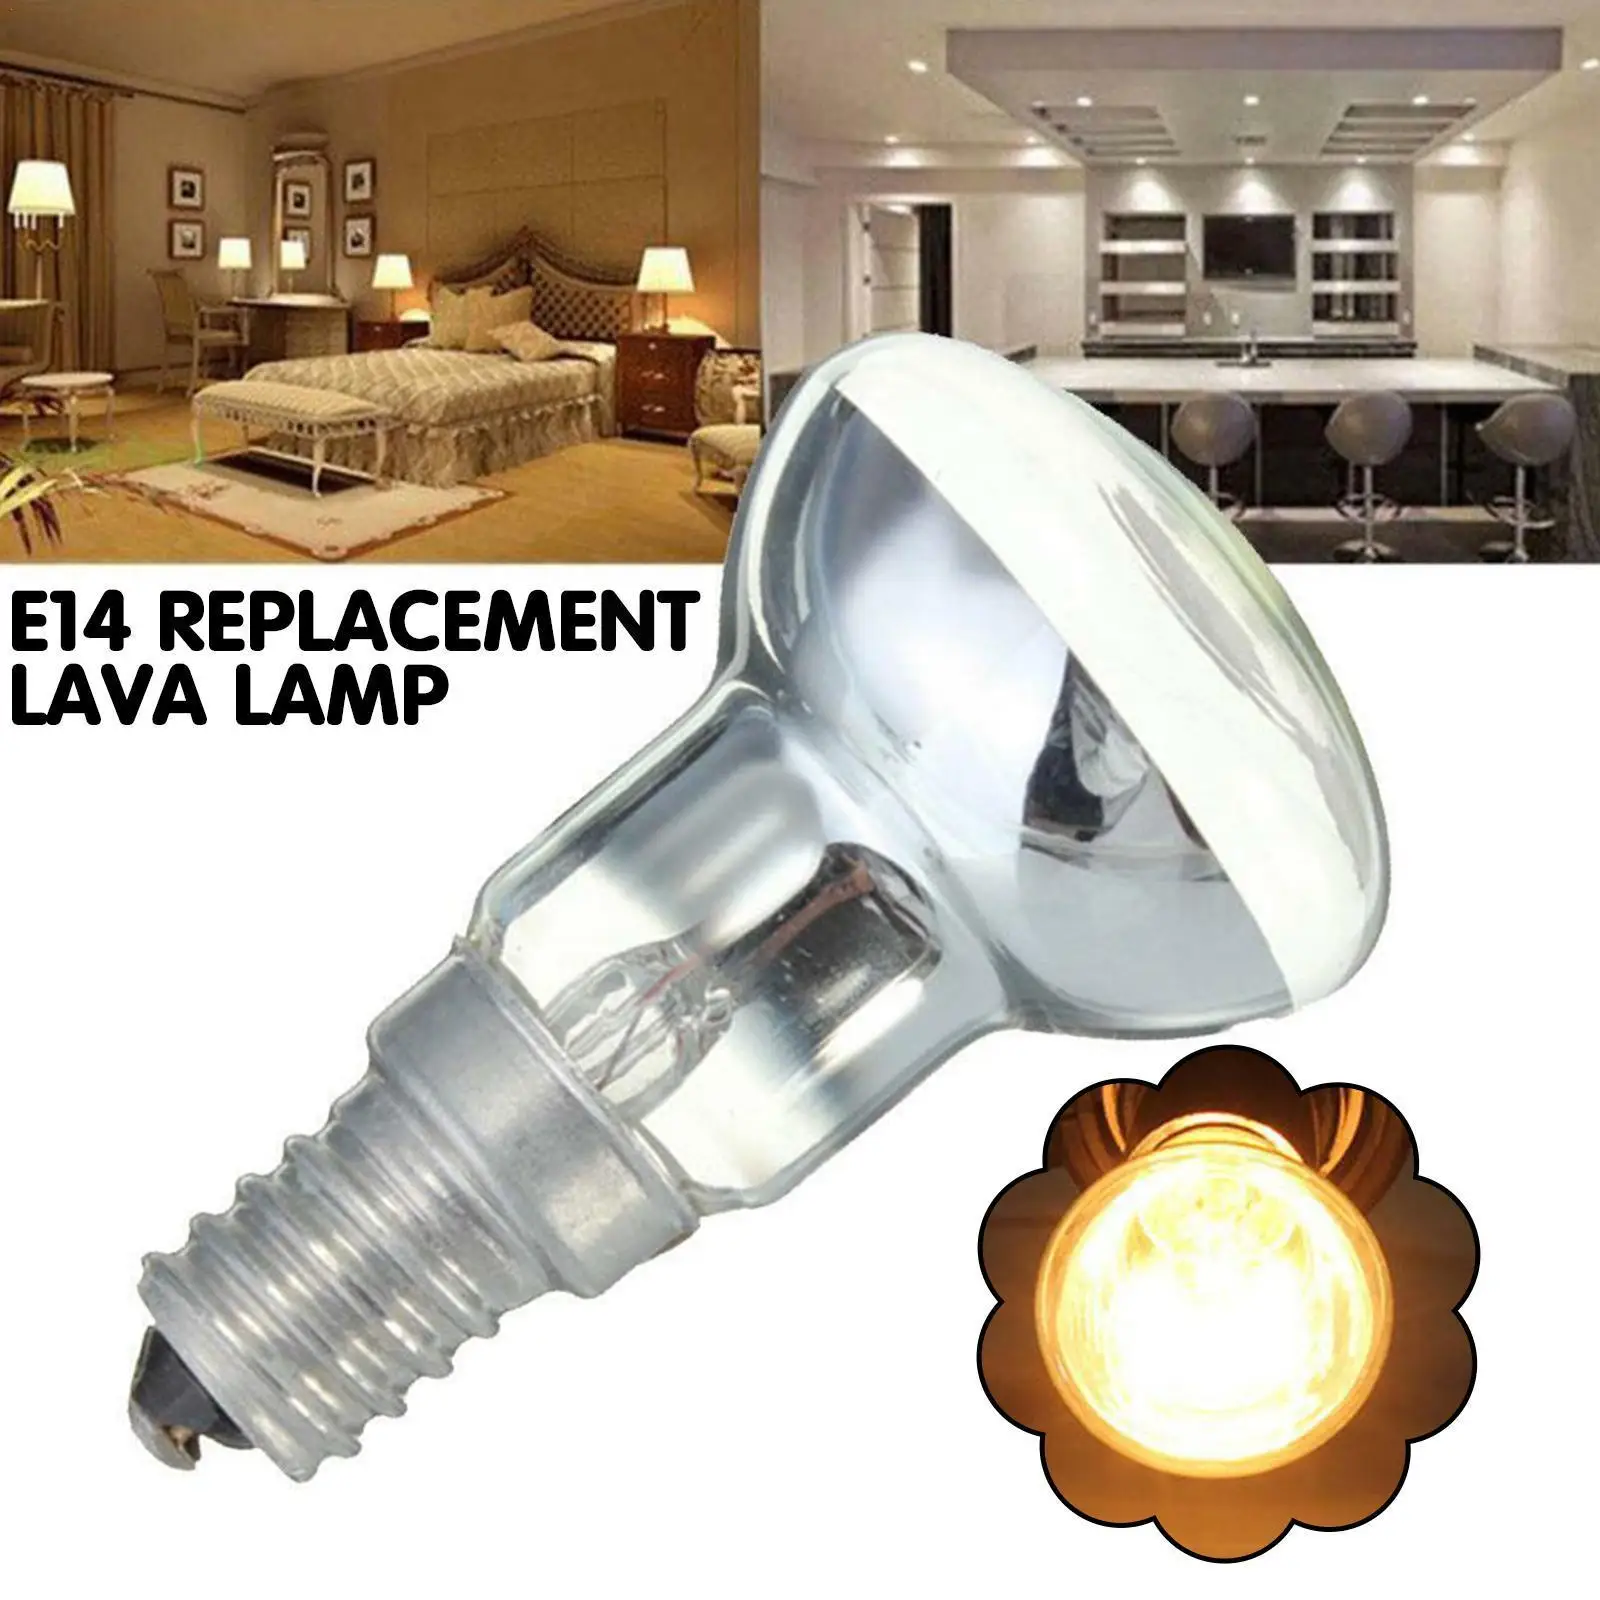 

E14 Replacement Lava Lamp R39 30w 240v Spotlight Screw Bulb Bulb Decor Filament Light In Edison Lamp Incandescent Home H2s1